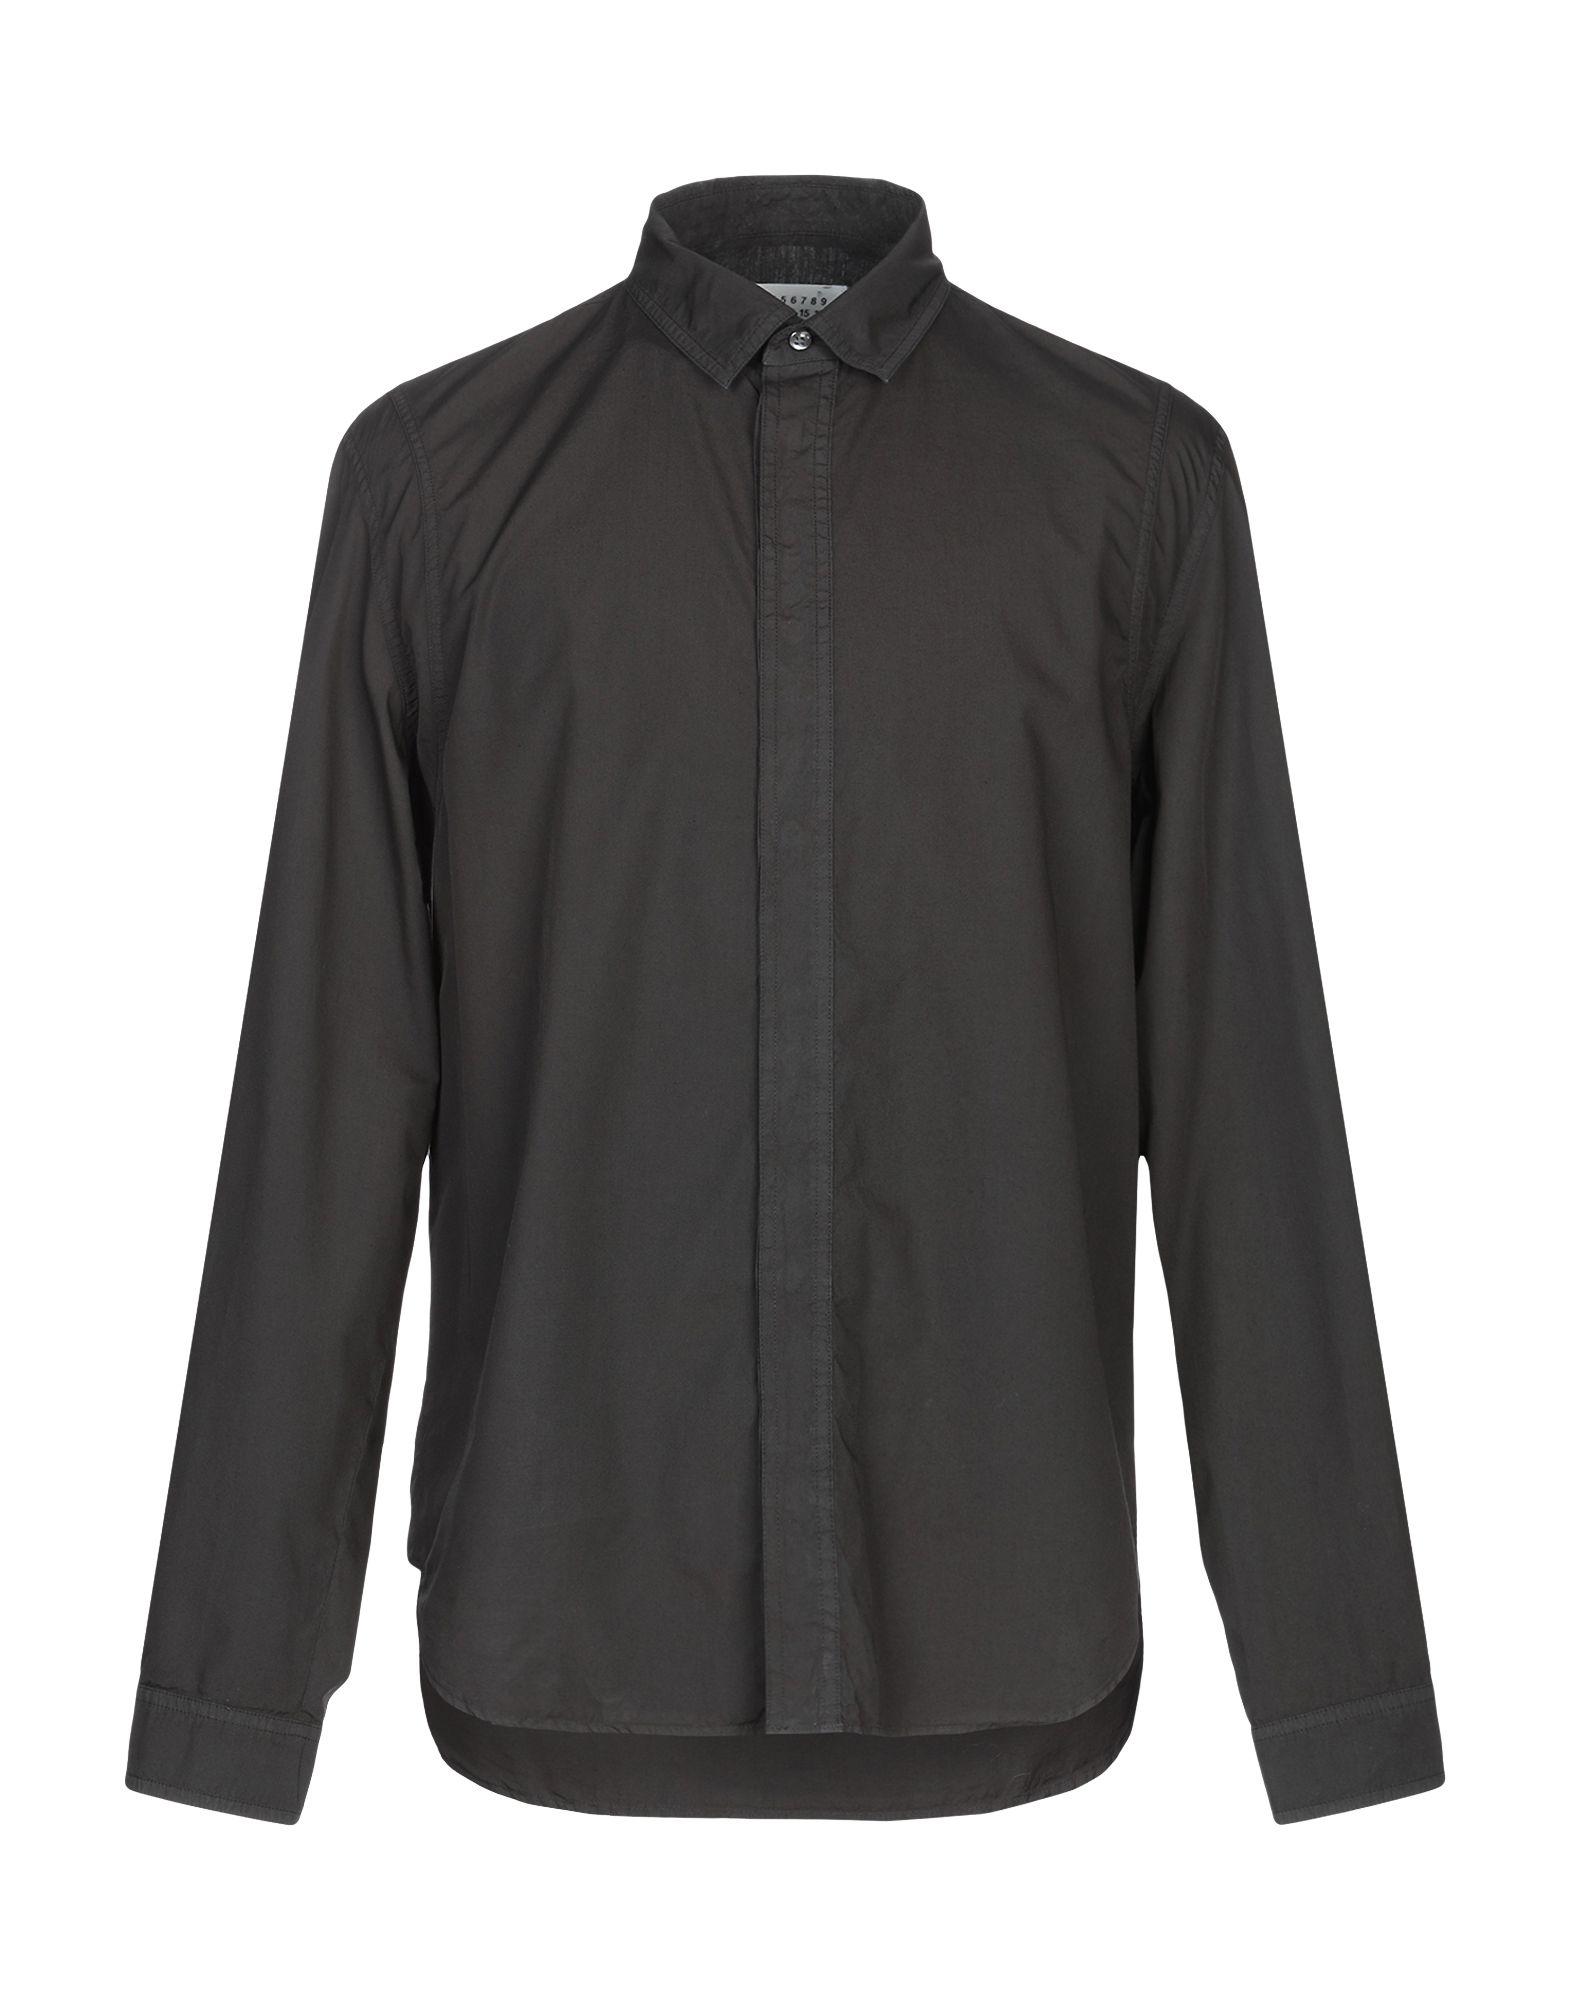 Maison Margiela Shirt in Black for Men - Lyst